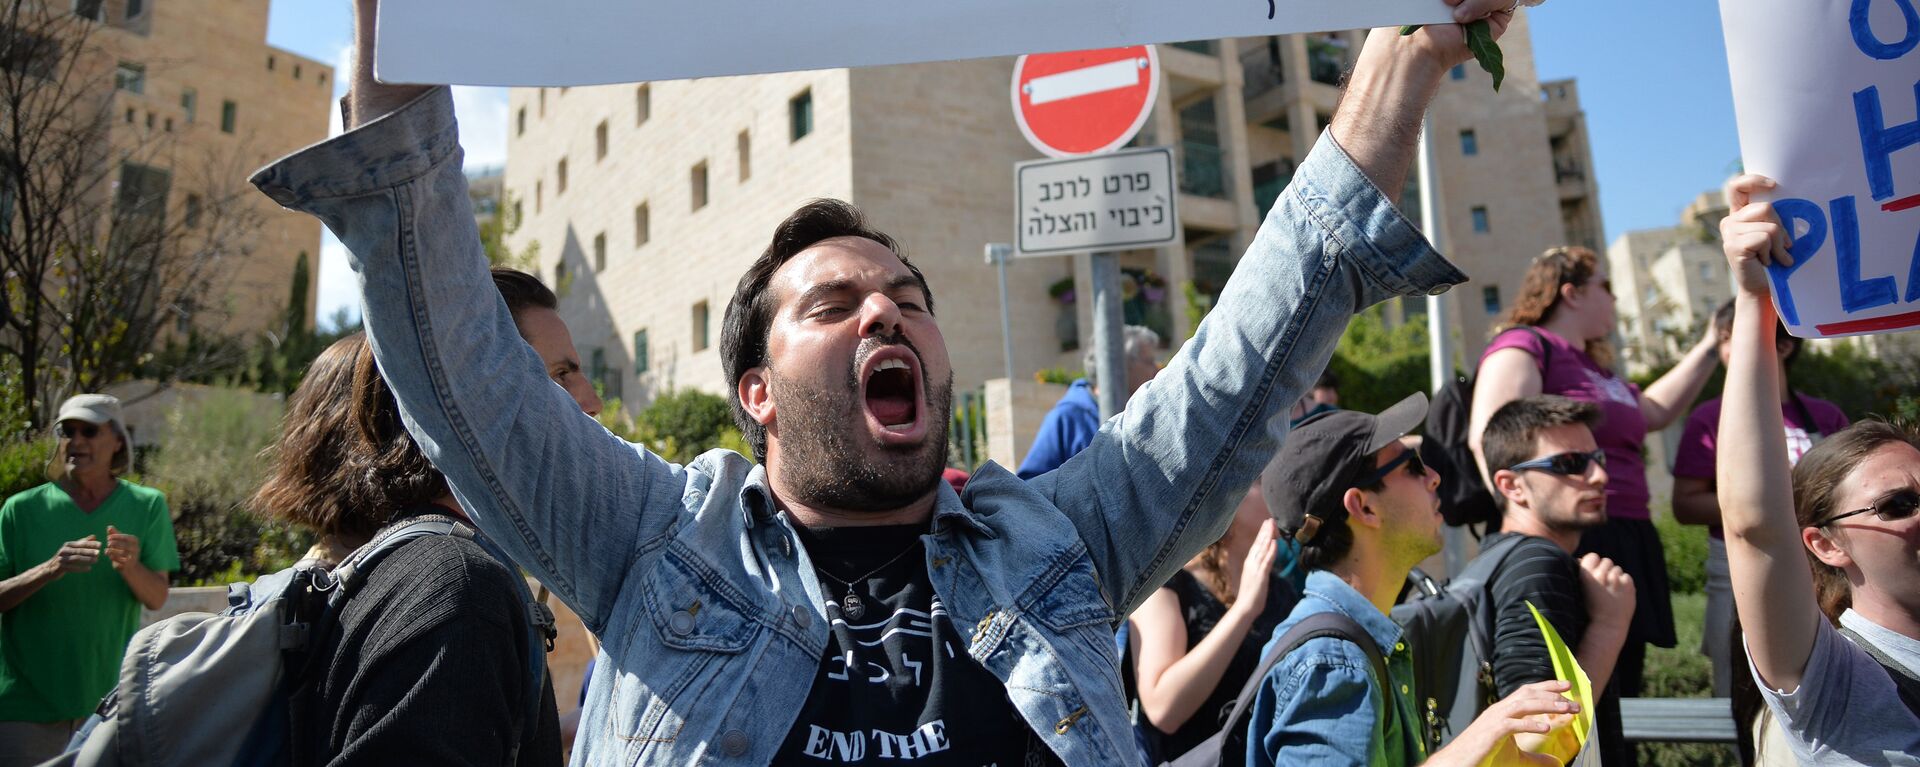 Протесты против переноса посольства США из Тель-Авива в Иерусалим - Sputnik Ўзбекистон, 1920, 16.05.2018